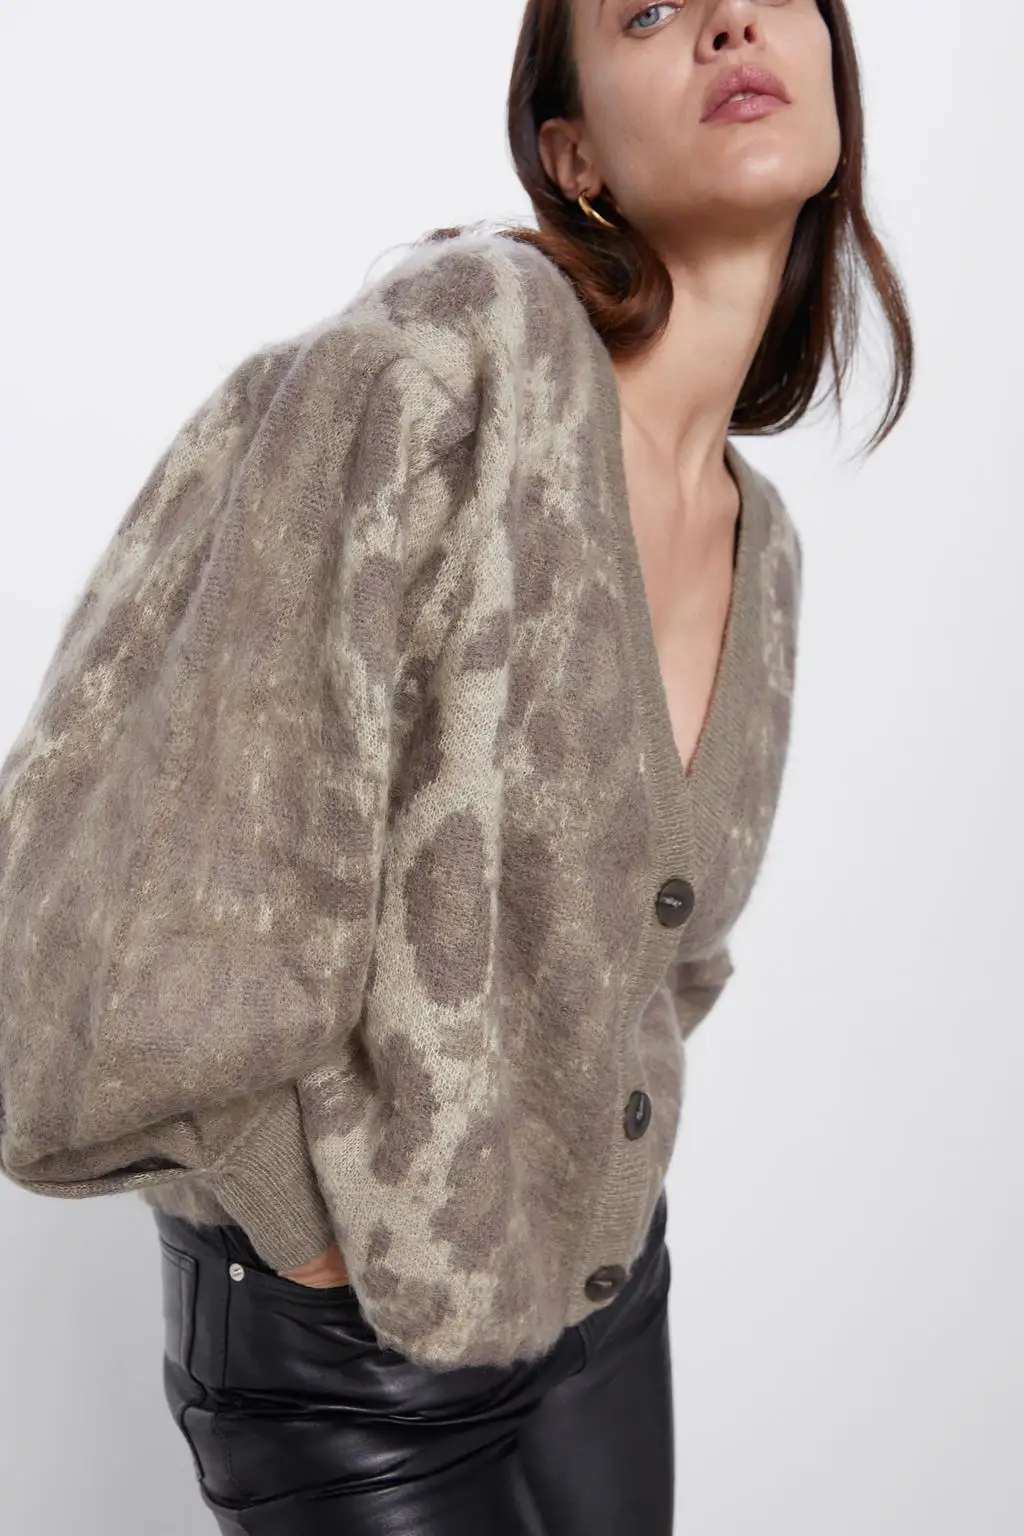 ZA женские кардиганы Новая мода v-образным вырезом с леопардовым принтом на одной пуговице толстое вязаное пальто femme Серый свободный свитер Топ